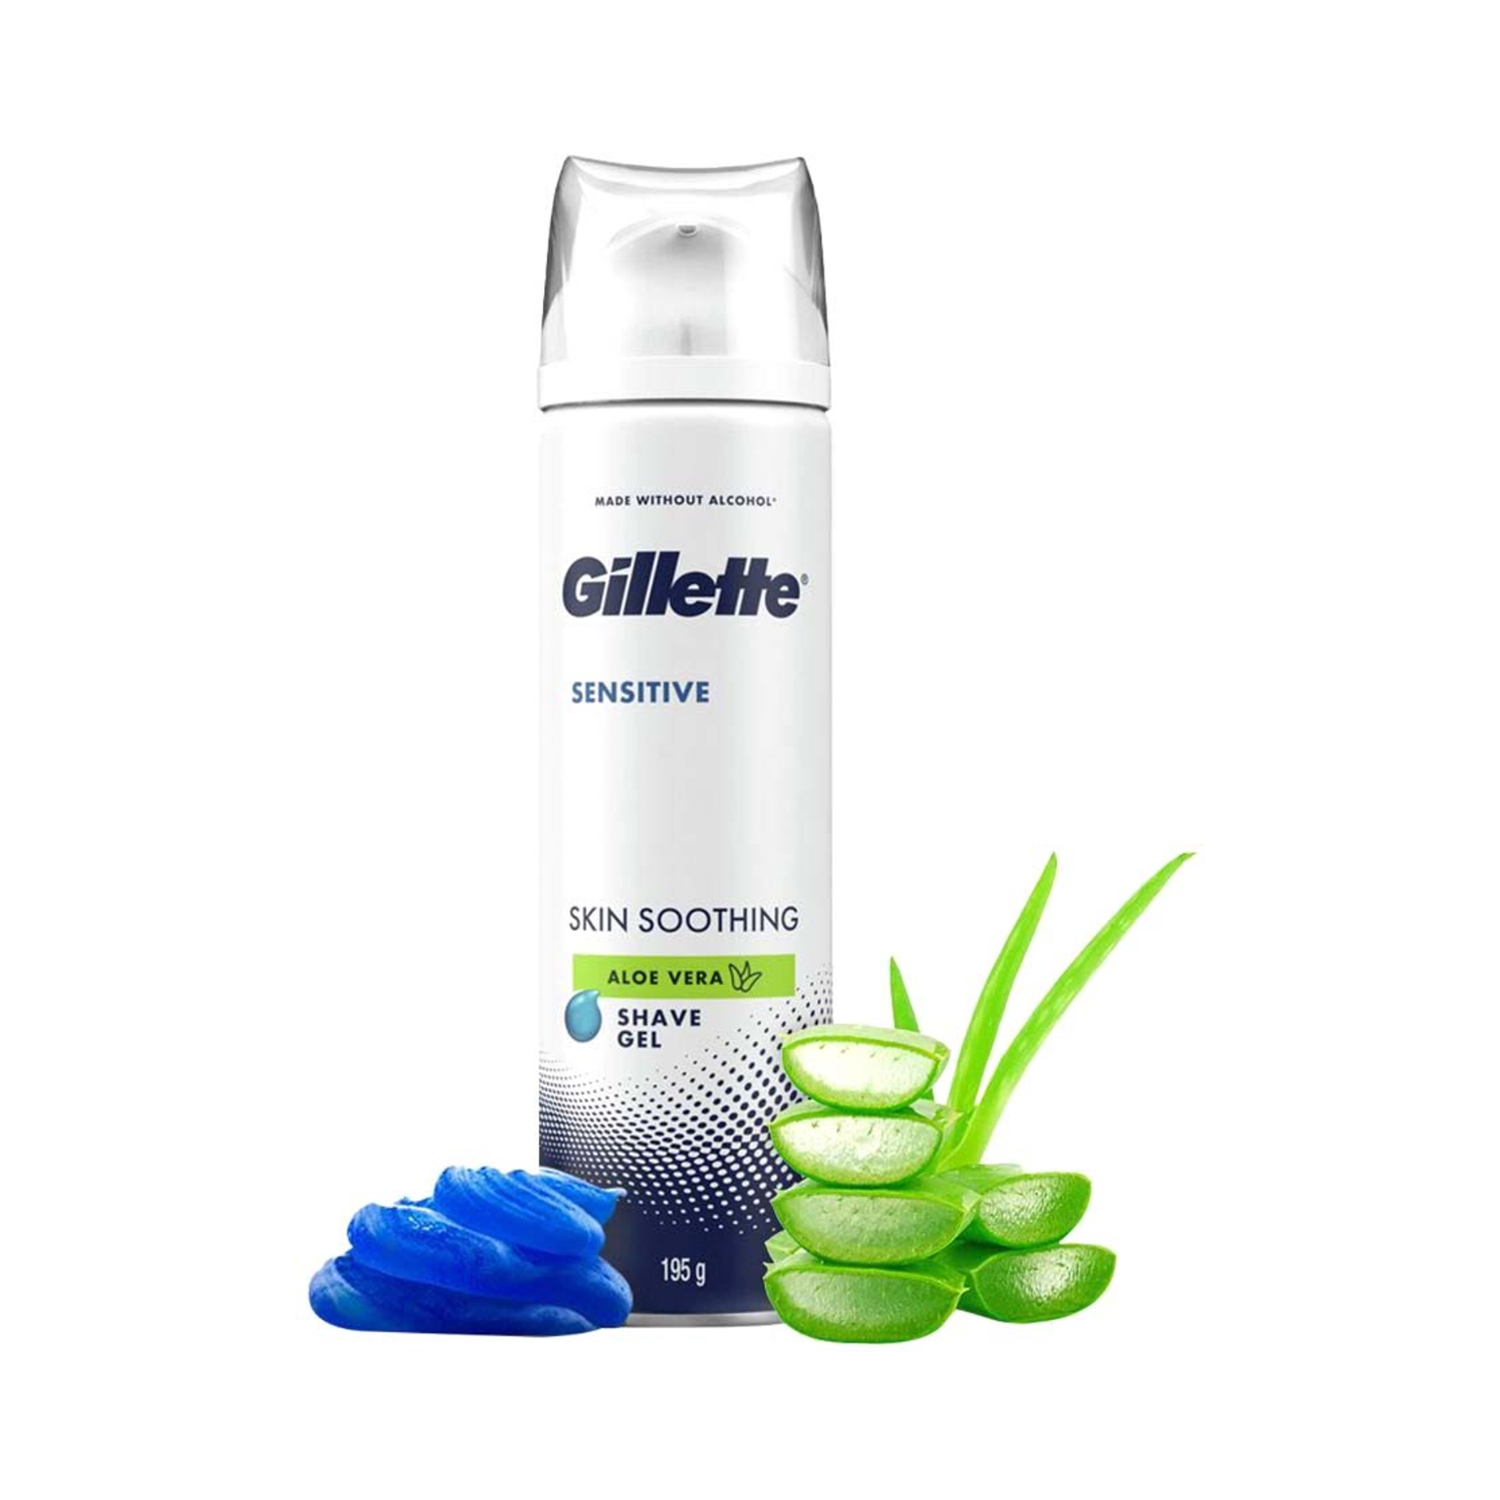 Gillette | Gillette Sensitive Shaving Gel Soothing with Aloe Vera (195g)